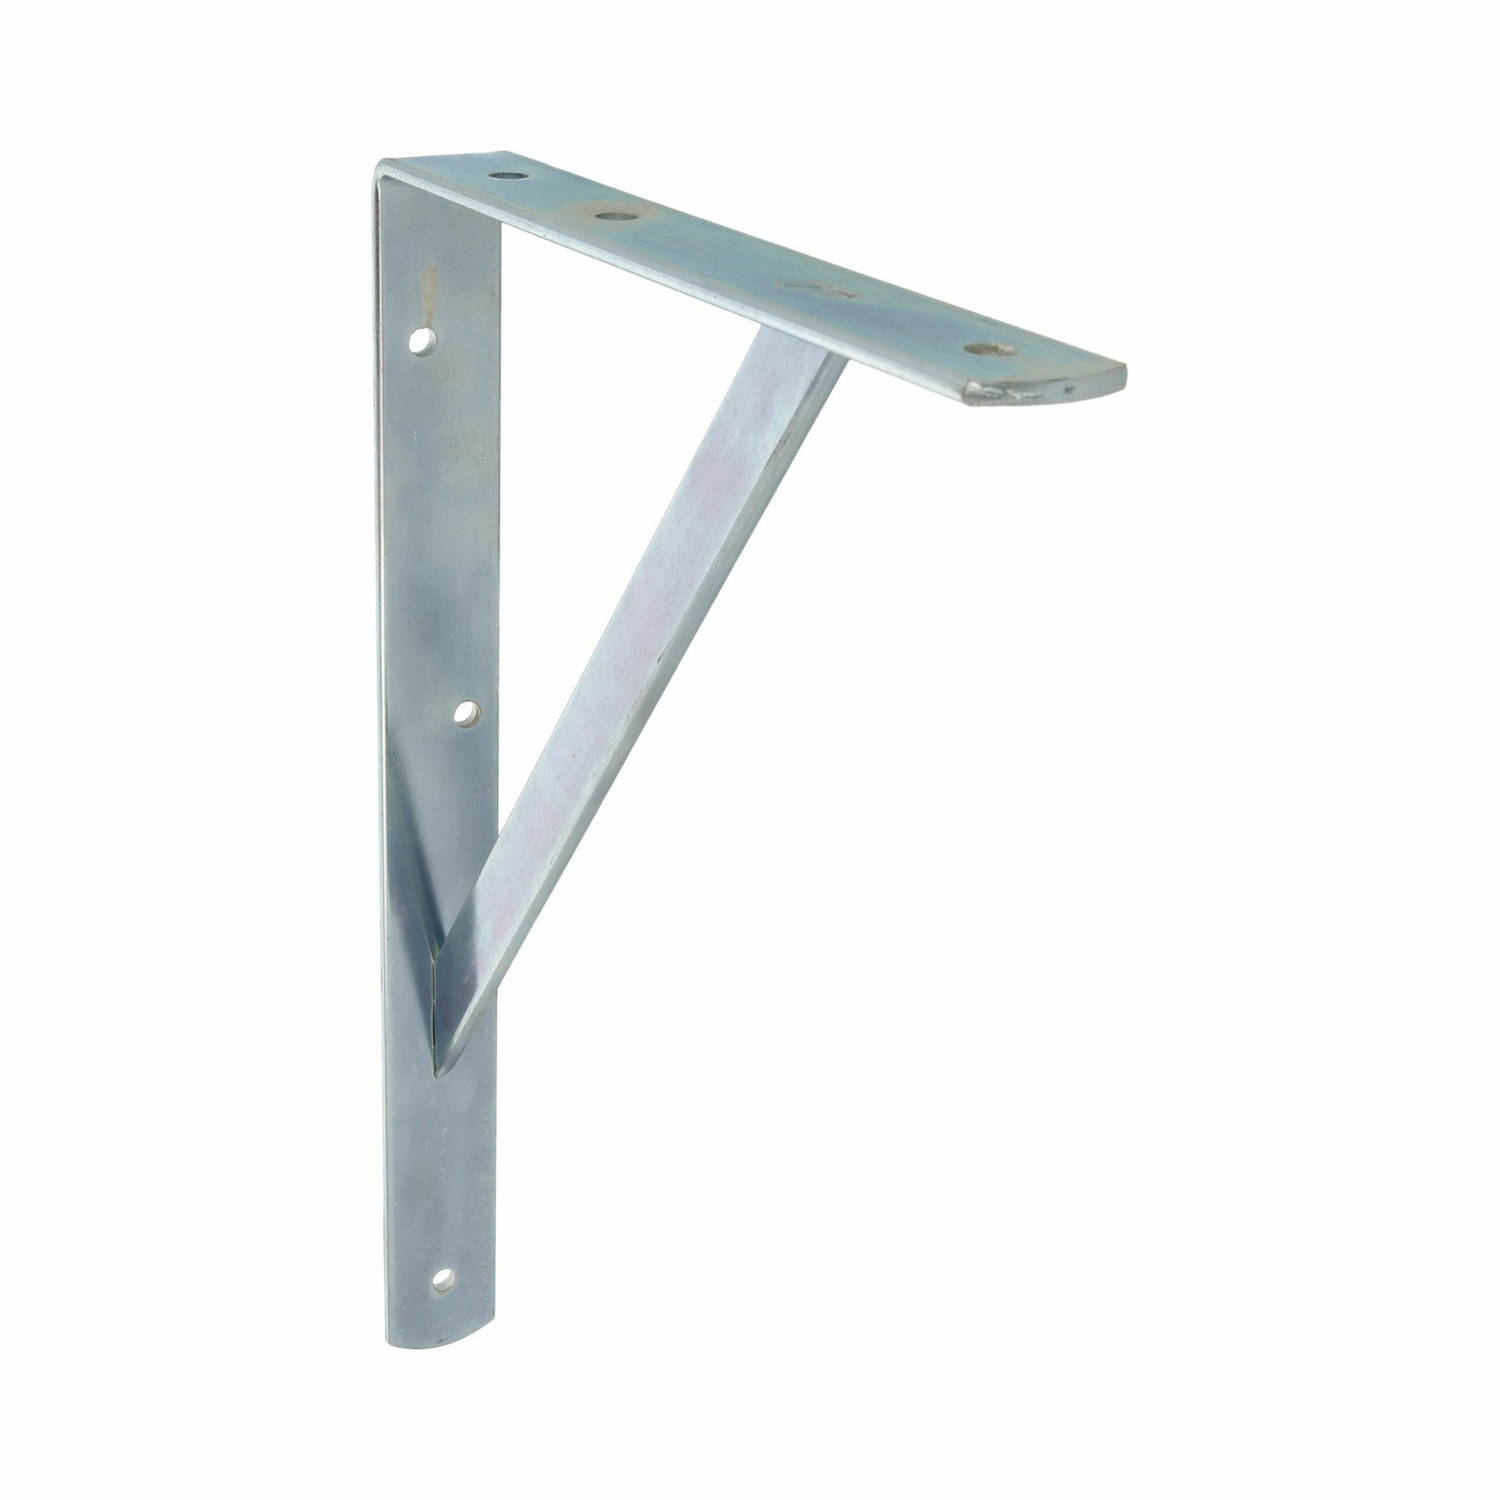 AMIG Plankdrager/planksteun van metaal - gelakt zilver - H500 x B325 mm - boekenplank steunen - tot 185 kg